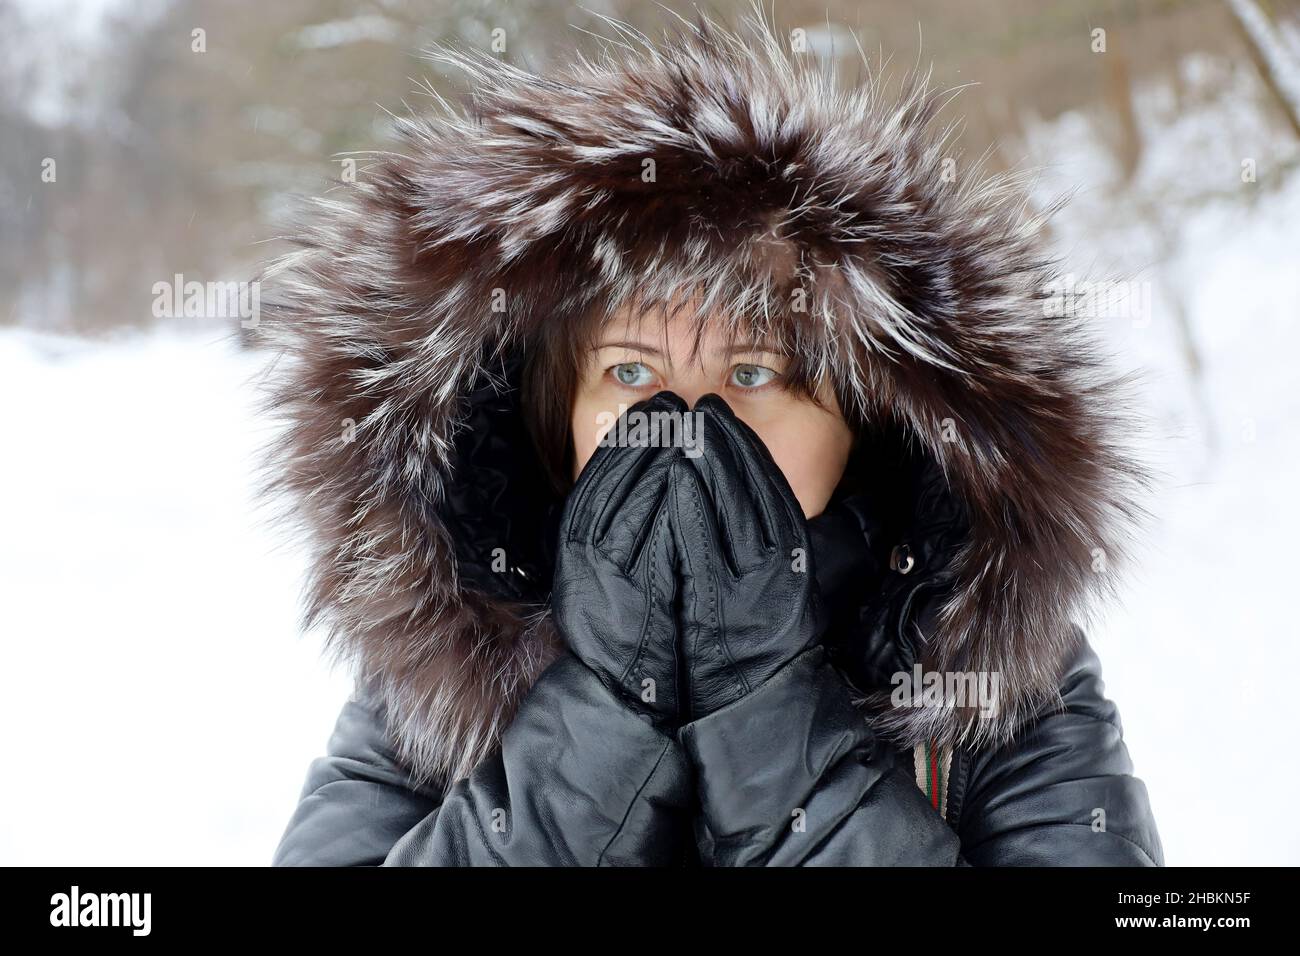 Temps de gel en hiver, femme en cuir manteau avec capuche en fourrure debout sur une rue pendant la neige et couvrant son visage par les mains dans des gants Banque D'Images